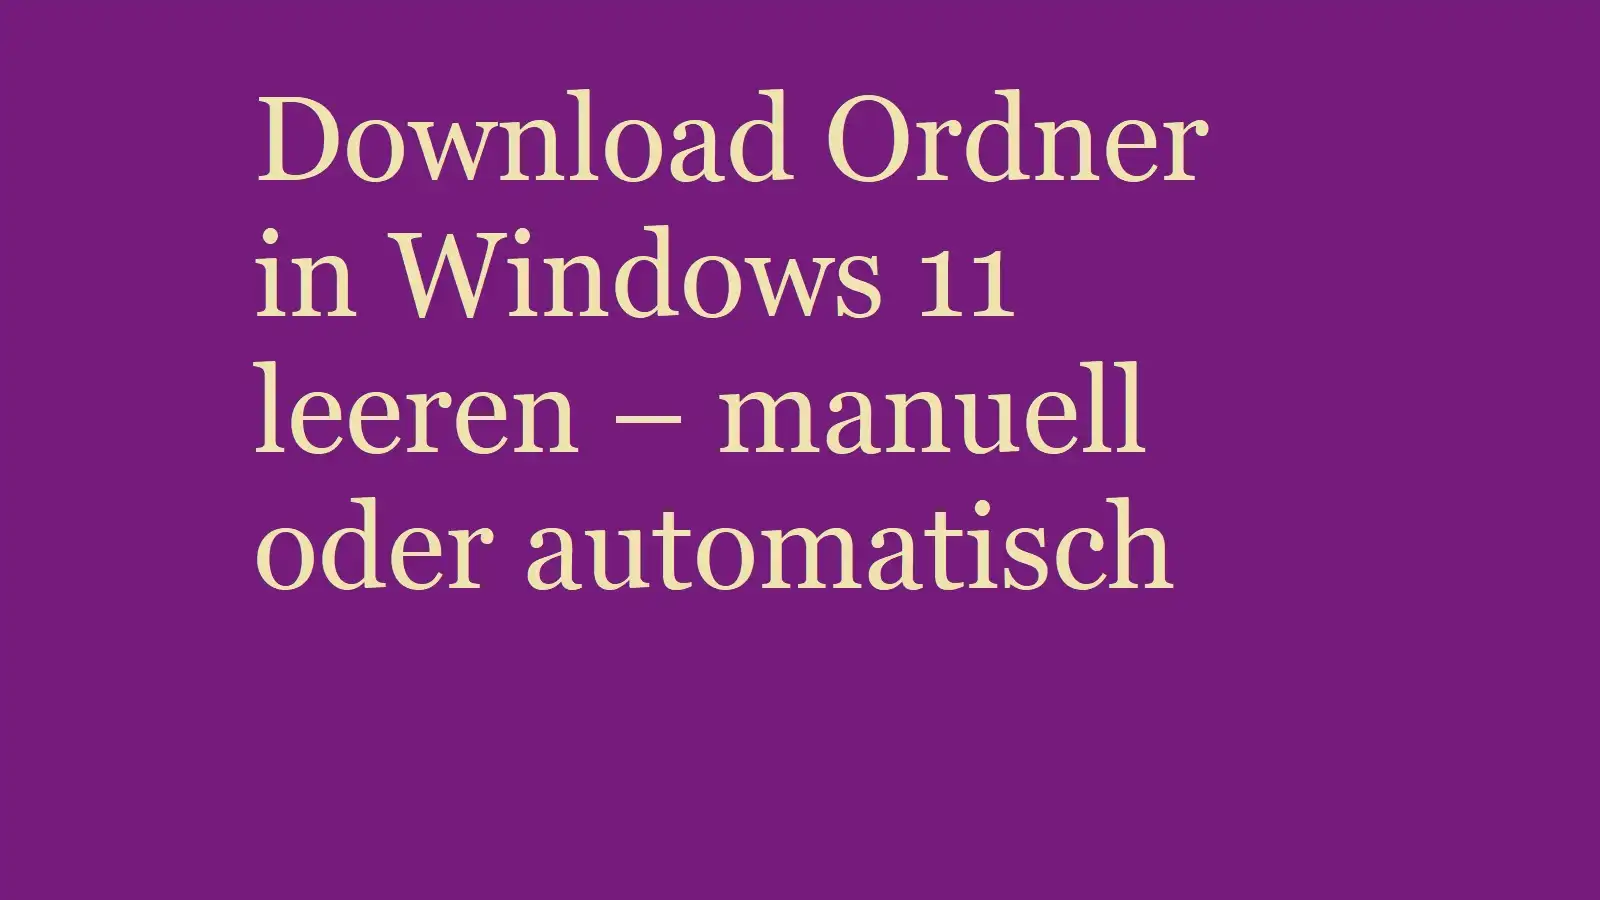 Download Ordner in Windows 11 leeren – manuell oder automatisch